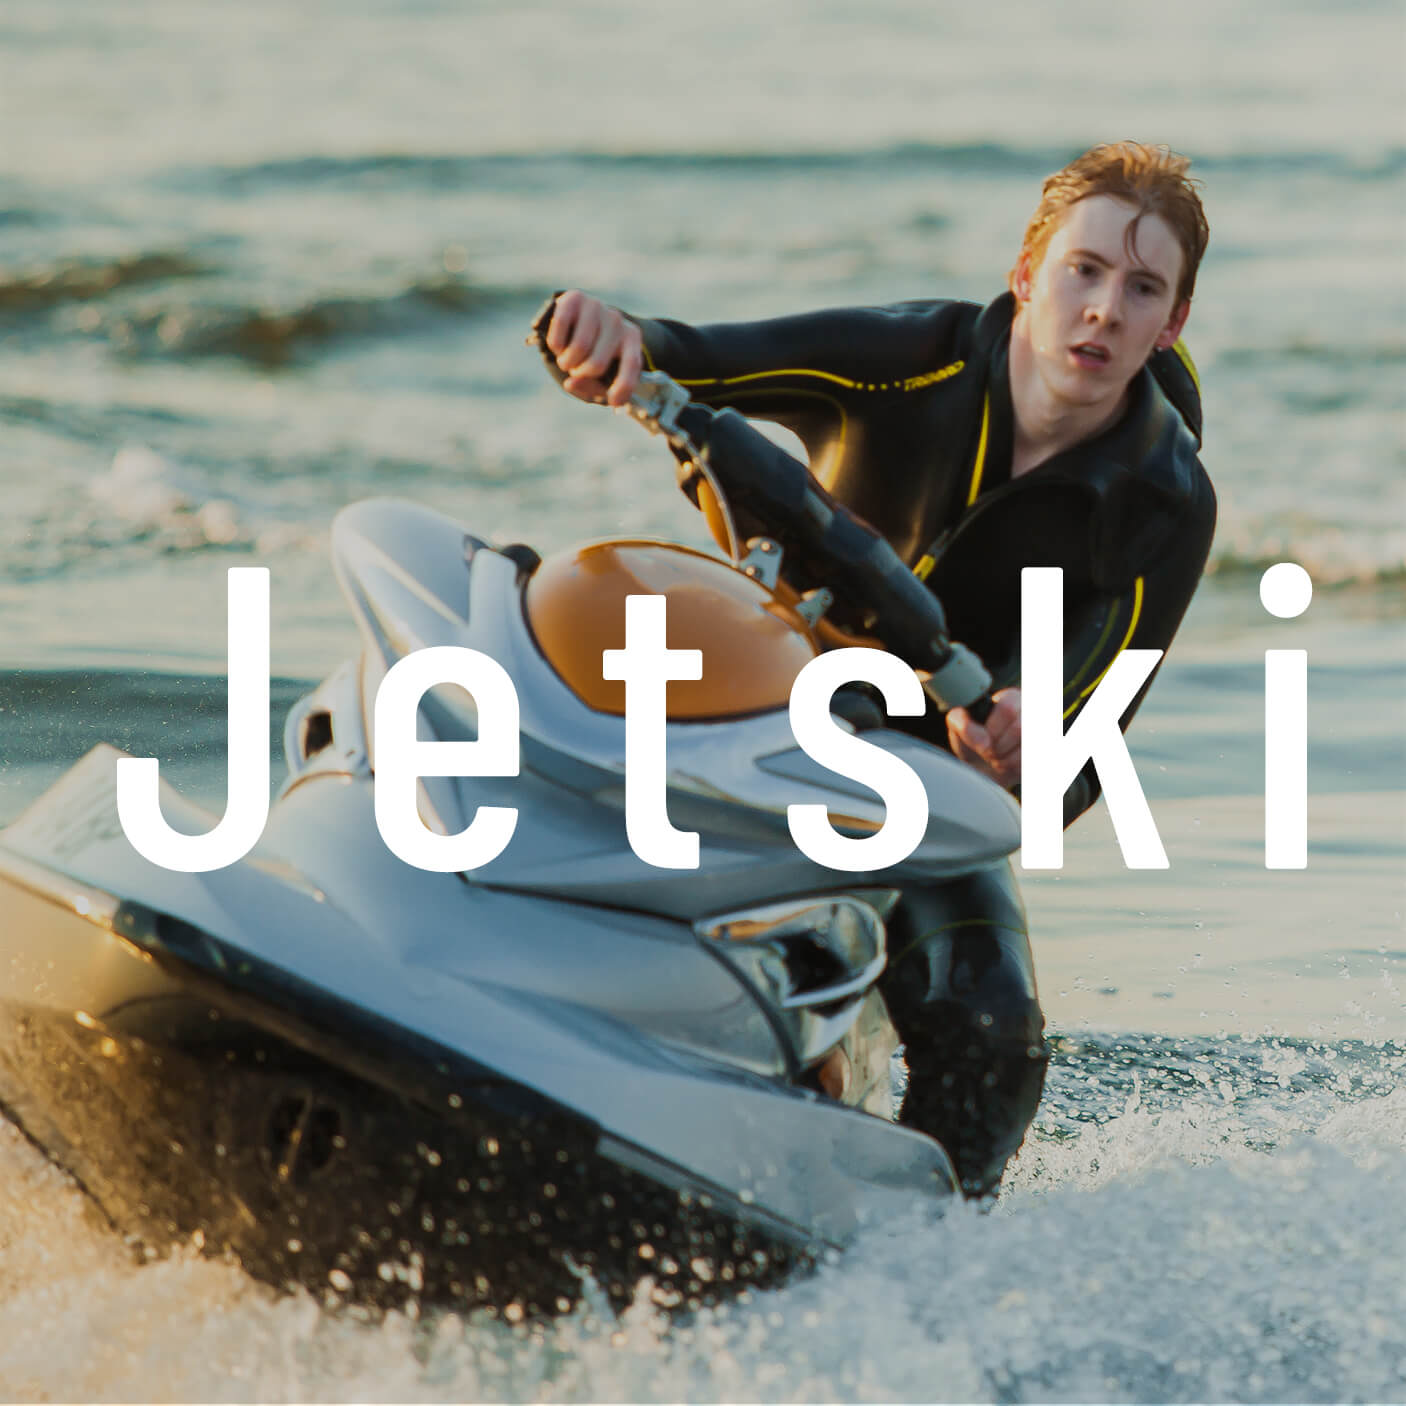 Jetski Website Design